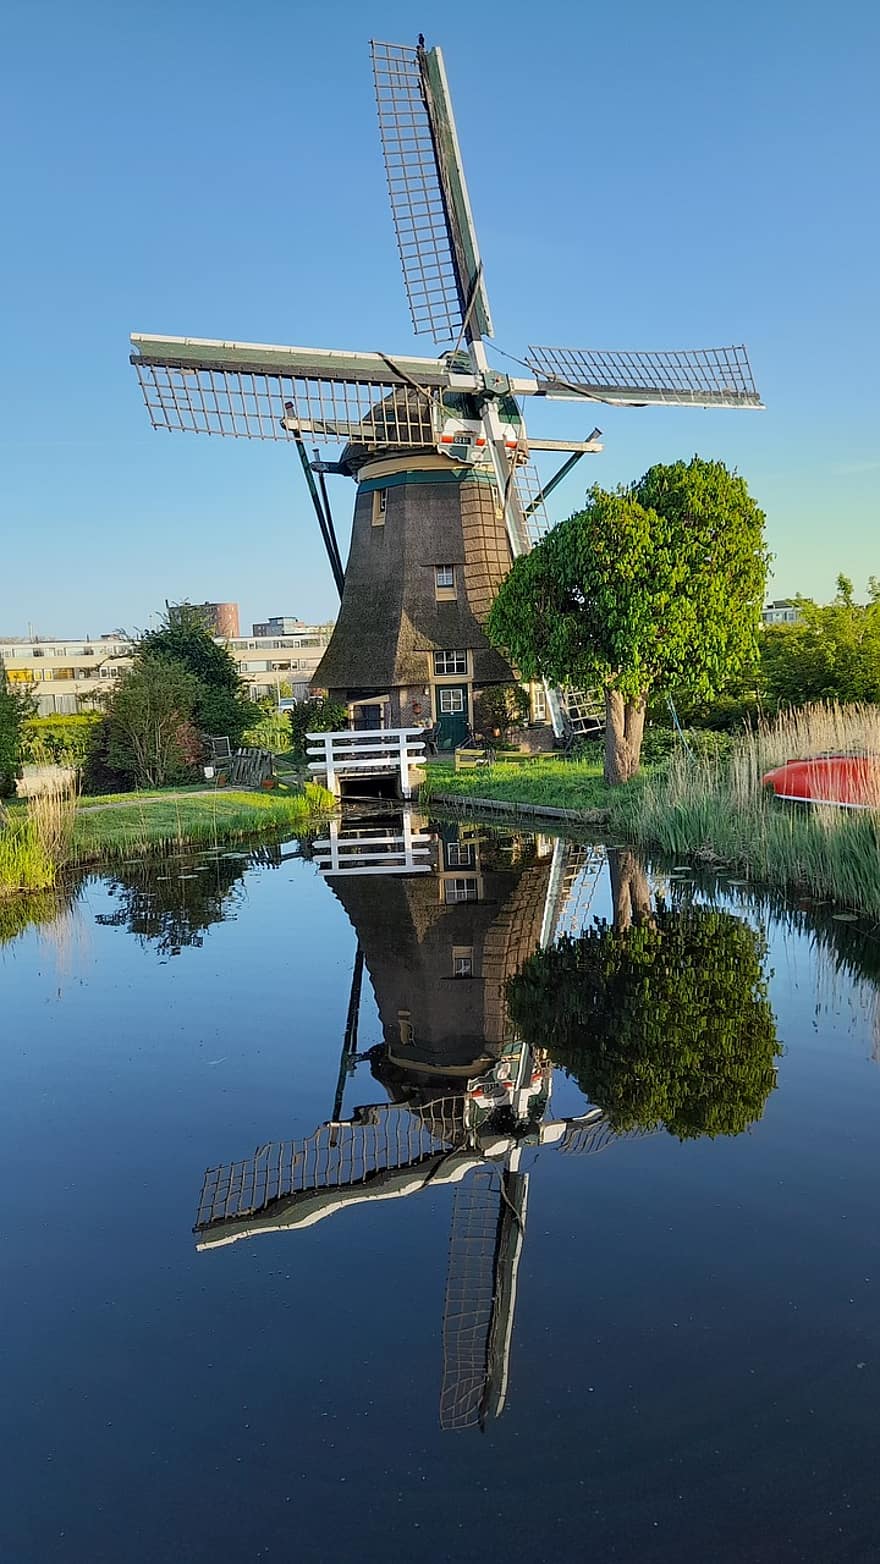 vindkraftverk, nederländerna, natur, reflexion, energi, kraft, vatten, landsbygden scen, väderkvarn, sommar, känt ställe